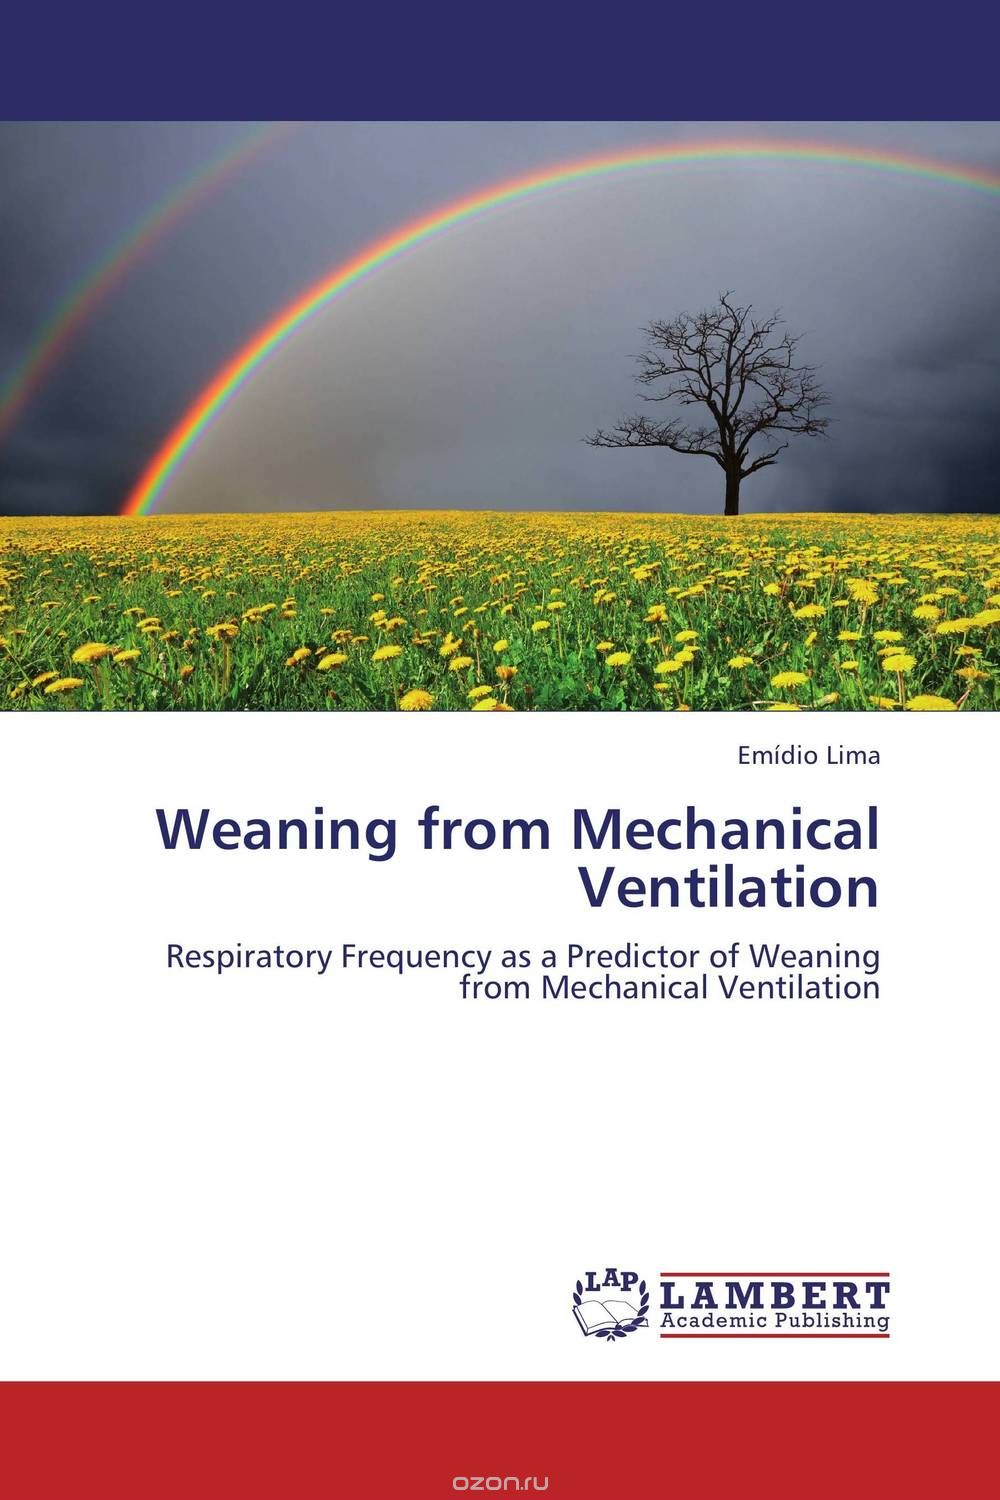 Скачать книгу "Weaning from Mechanical Ventilation"